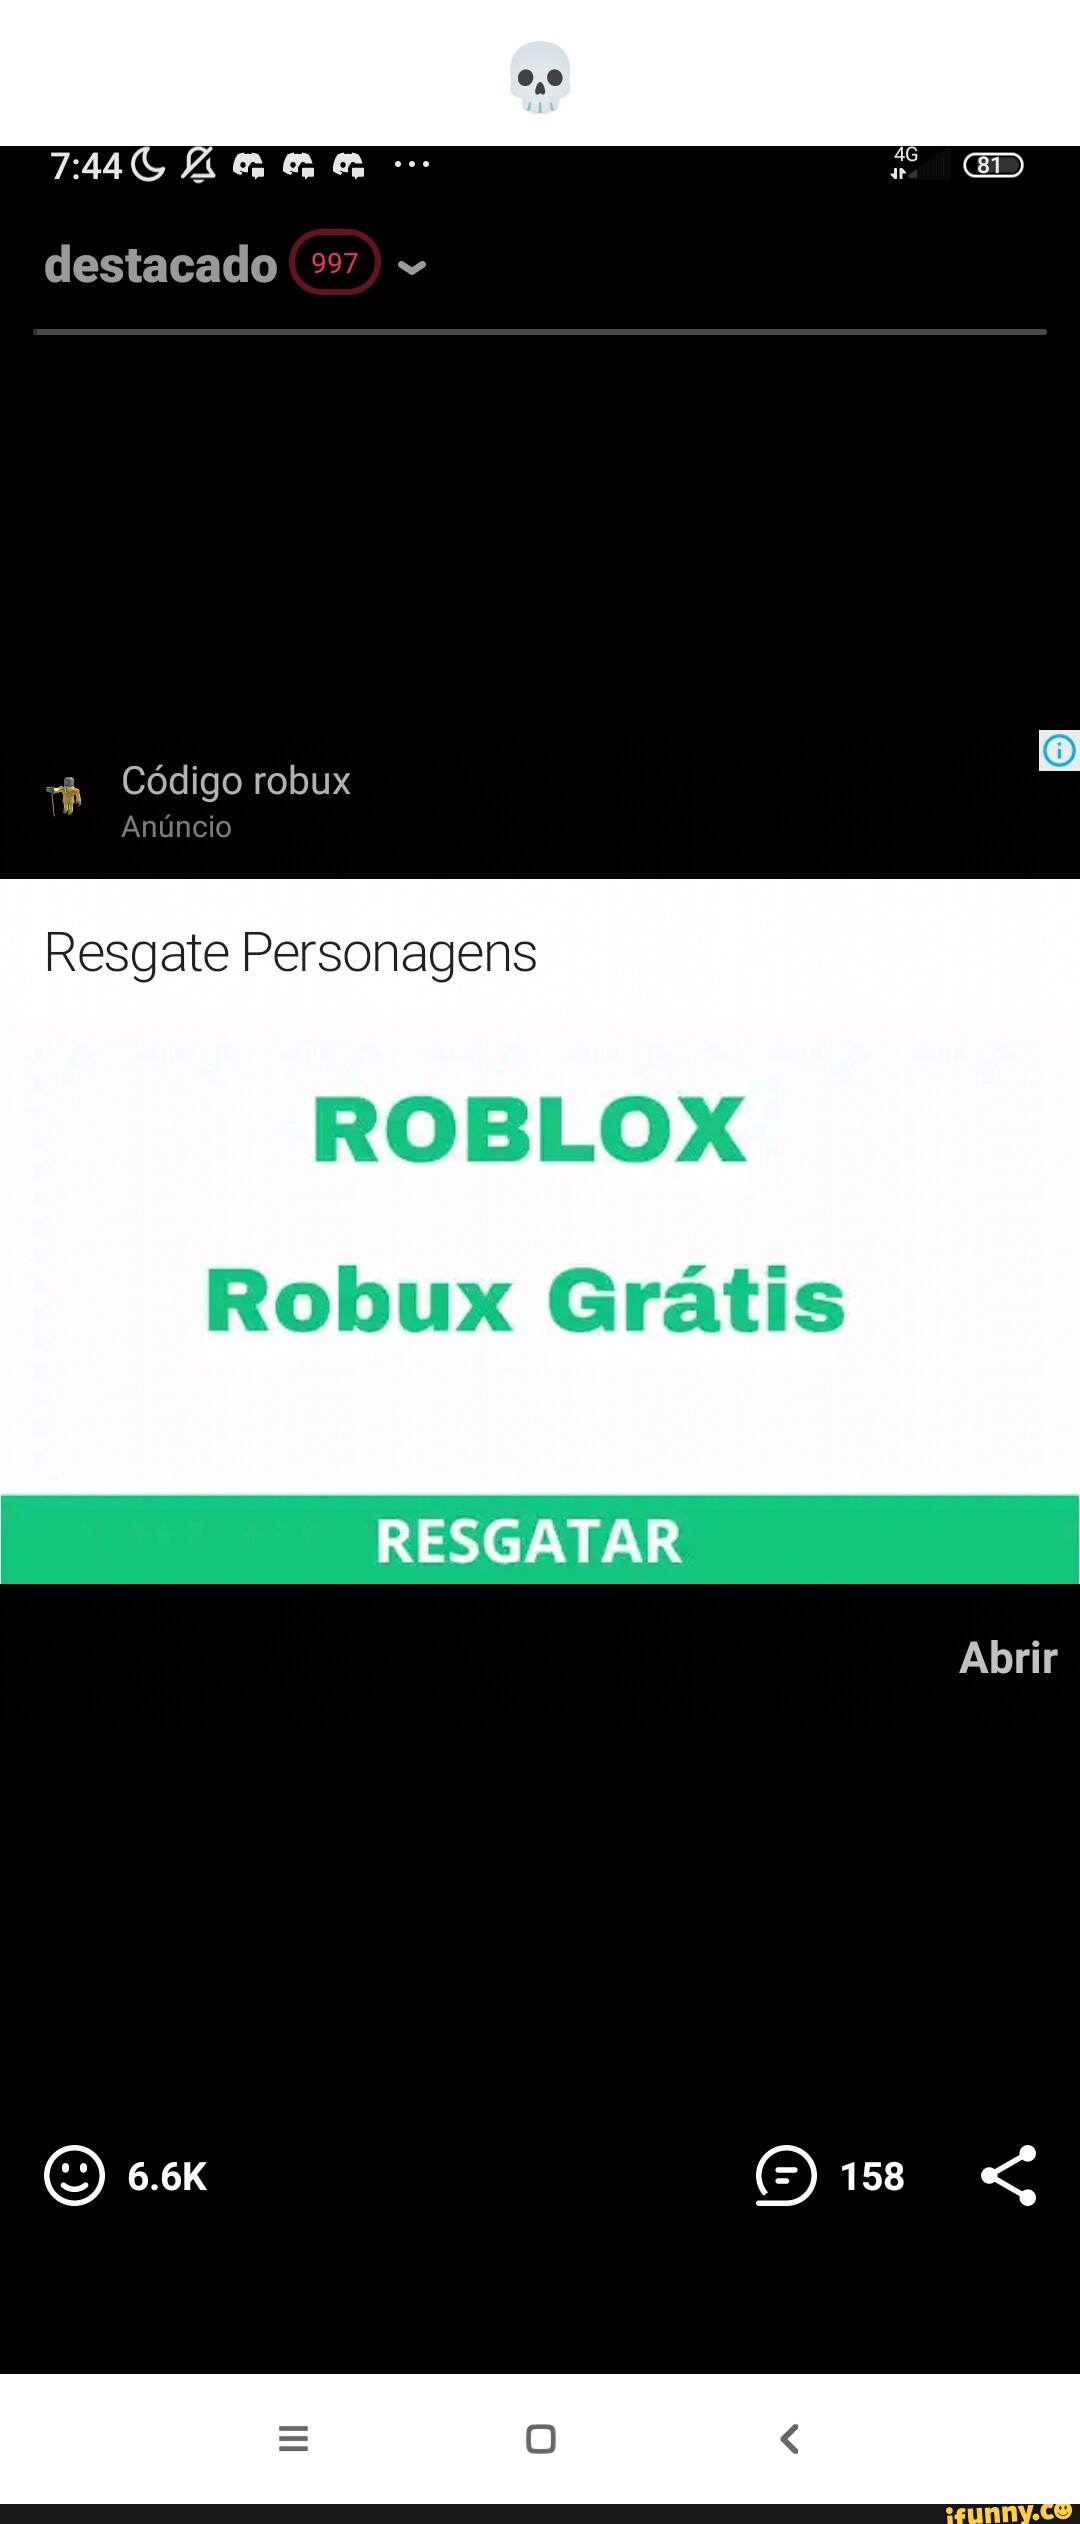 Ar destacado 997) Código robux Resgate Personagens ROBLOX Robux